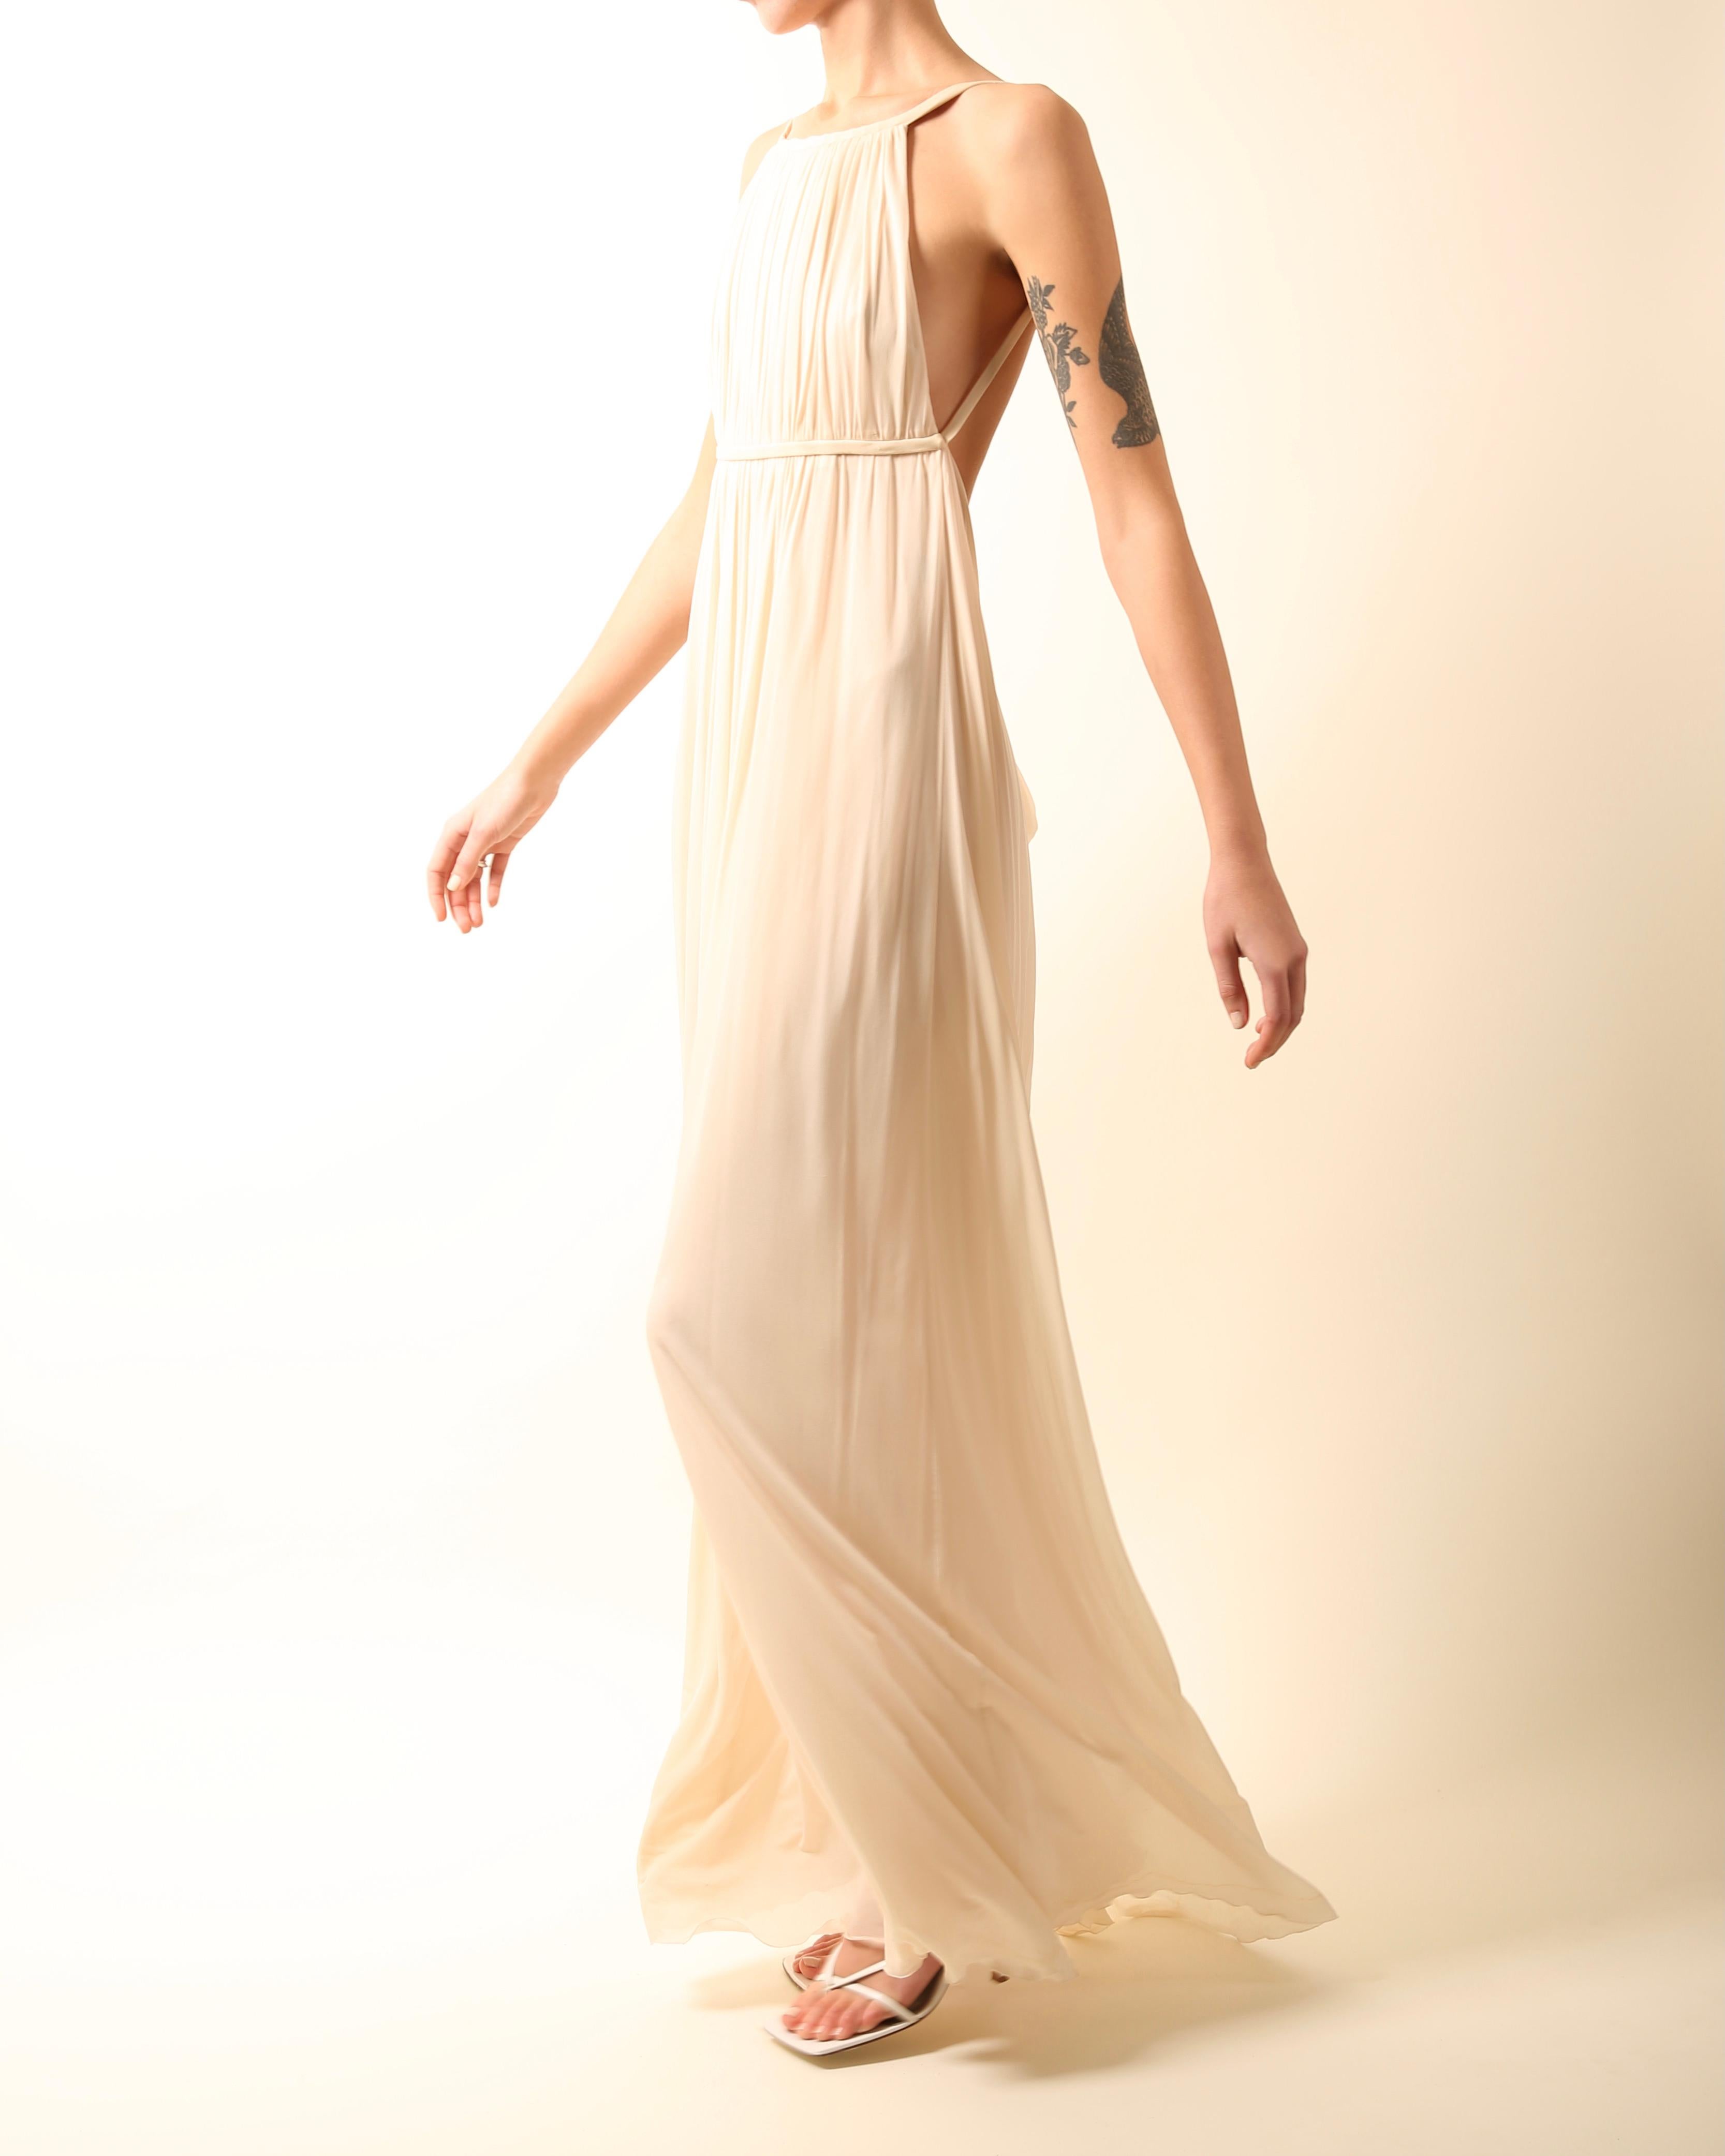 Robe de mariée longue dos nu Halston 09 plissée crème ivoire de style grec, taille 42 3